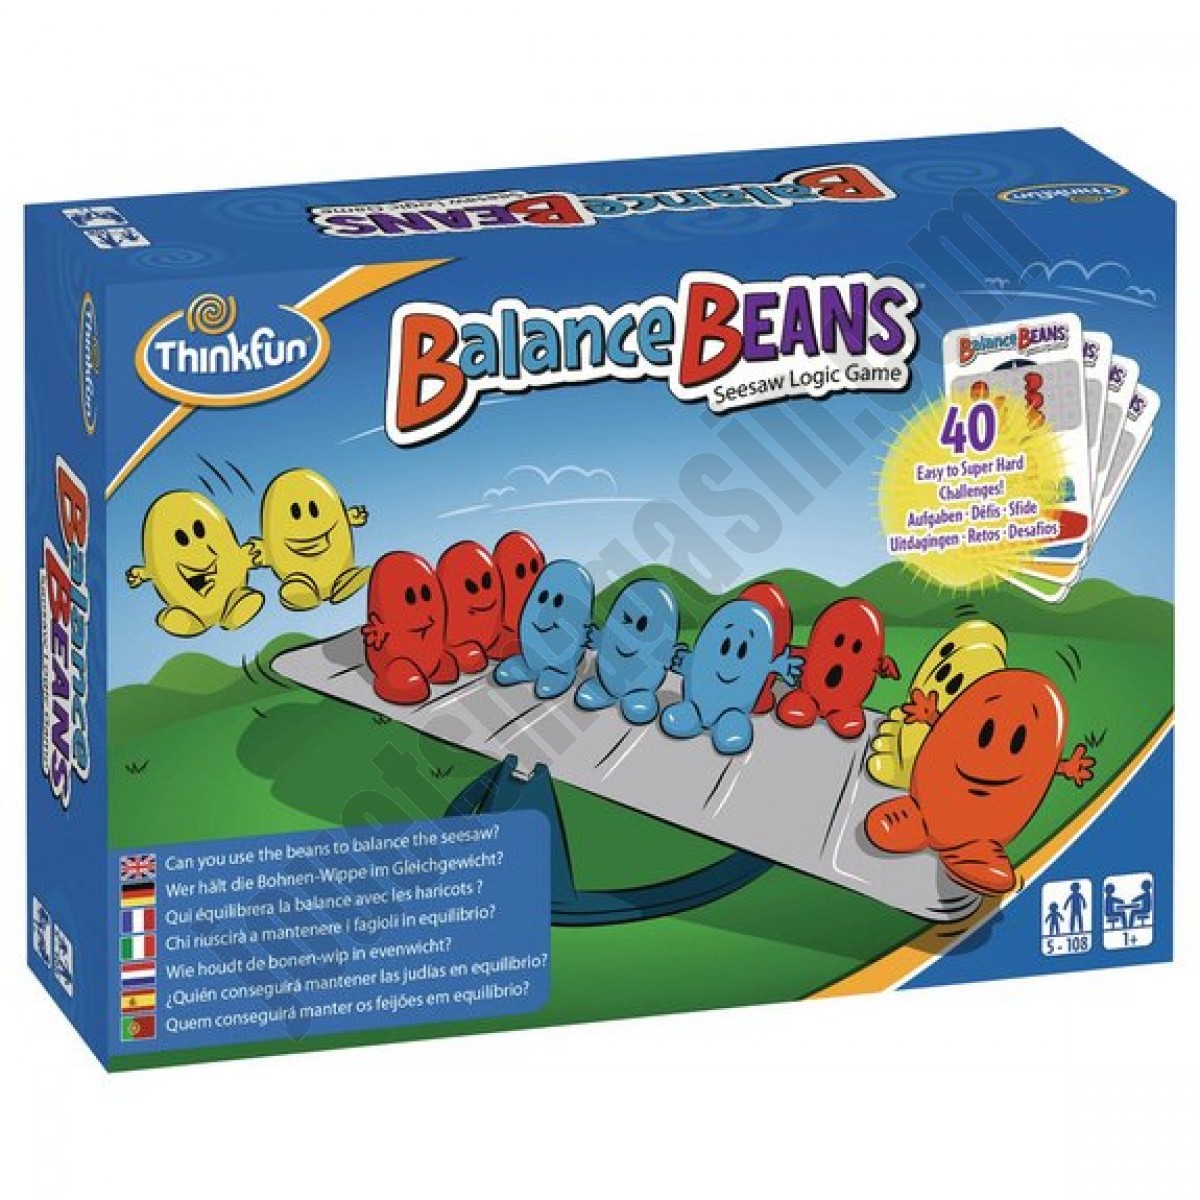 Balance beans En promotion - Balance beans En promotion